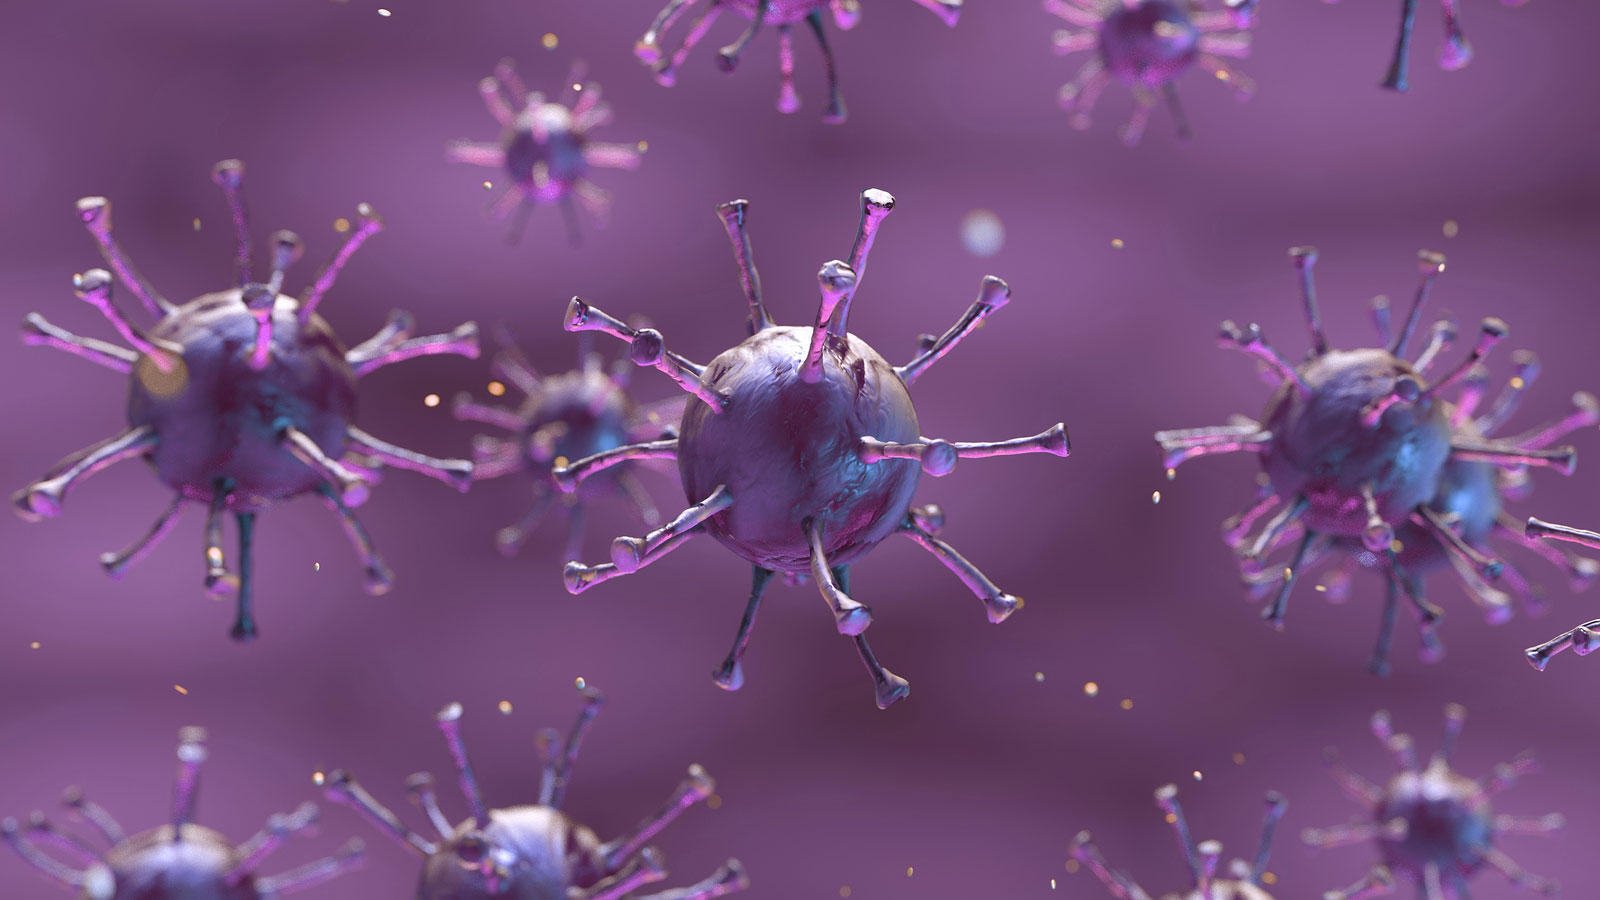 O novo coronavírus não foi criado em laboratório, segundo pesquisas recentes